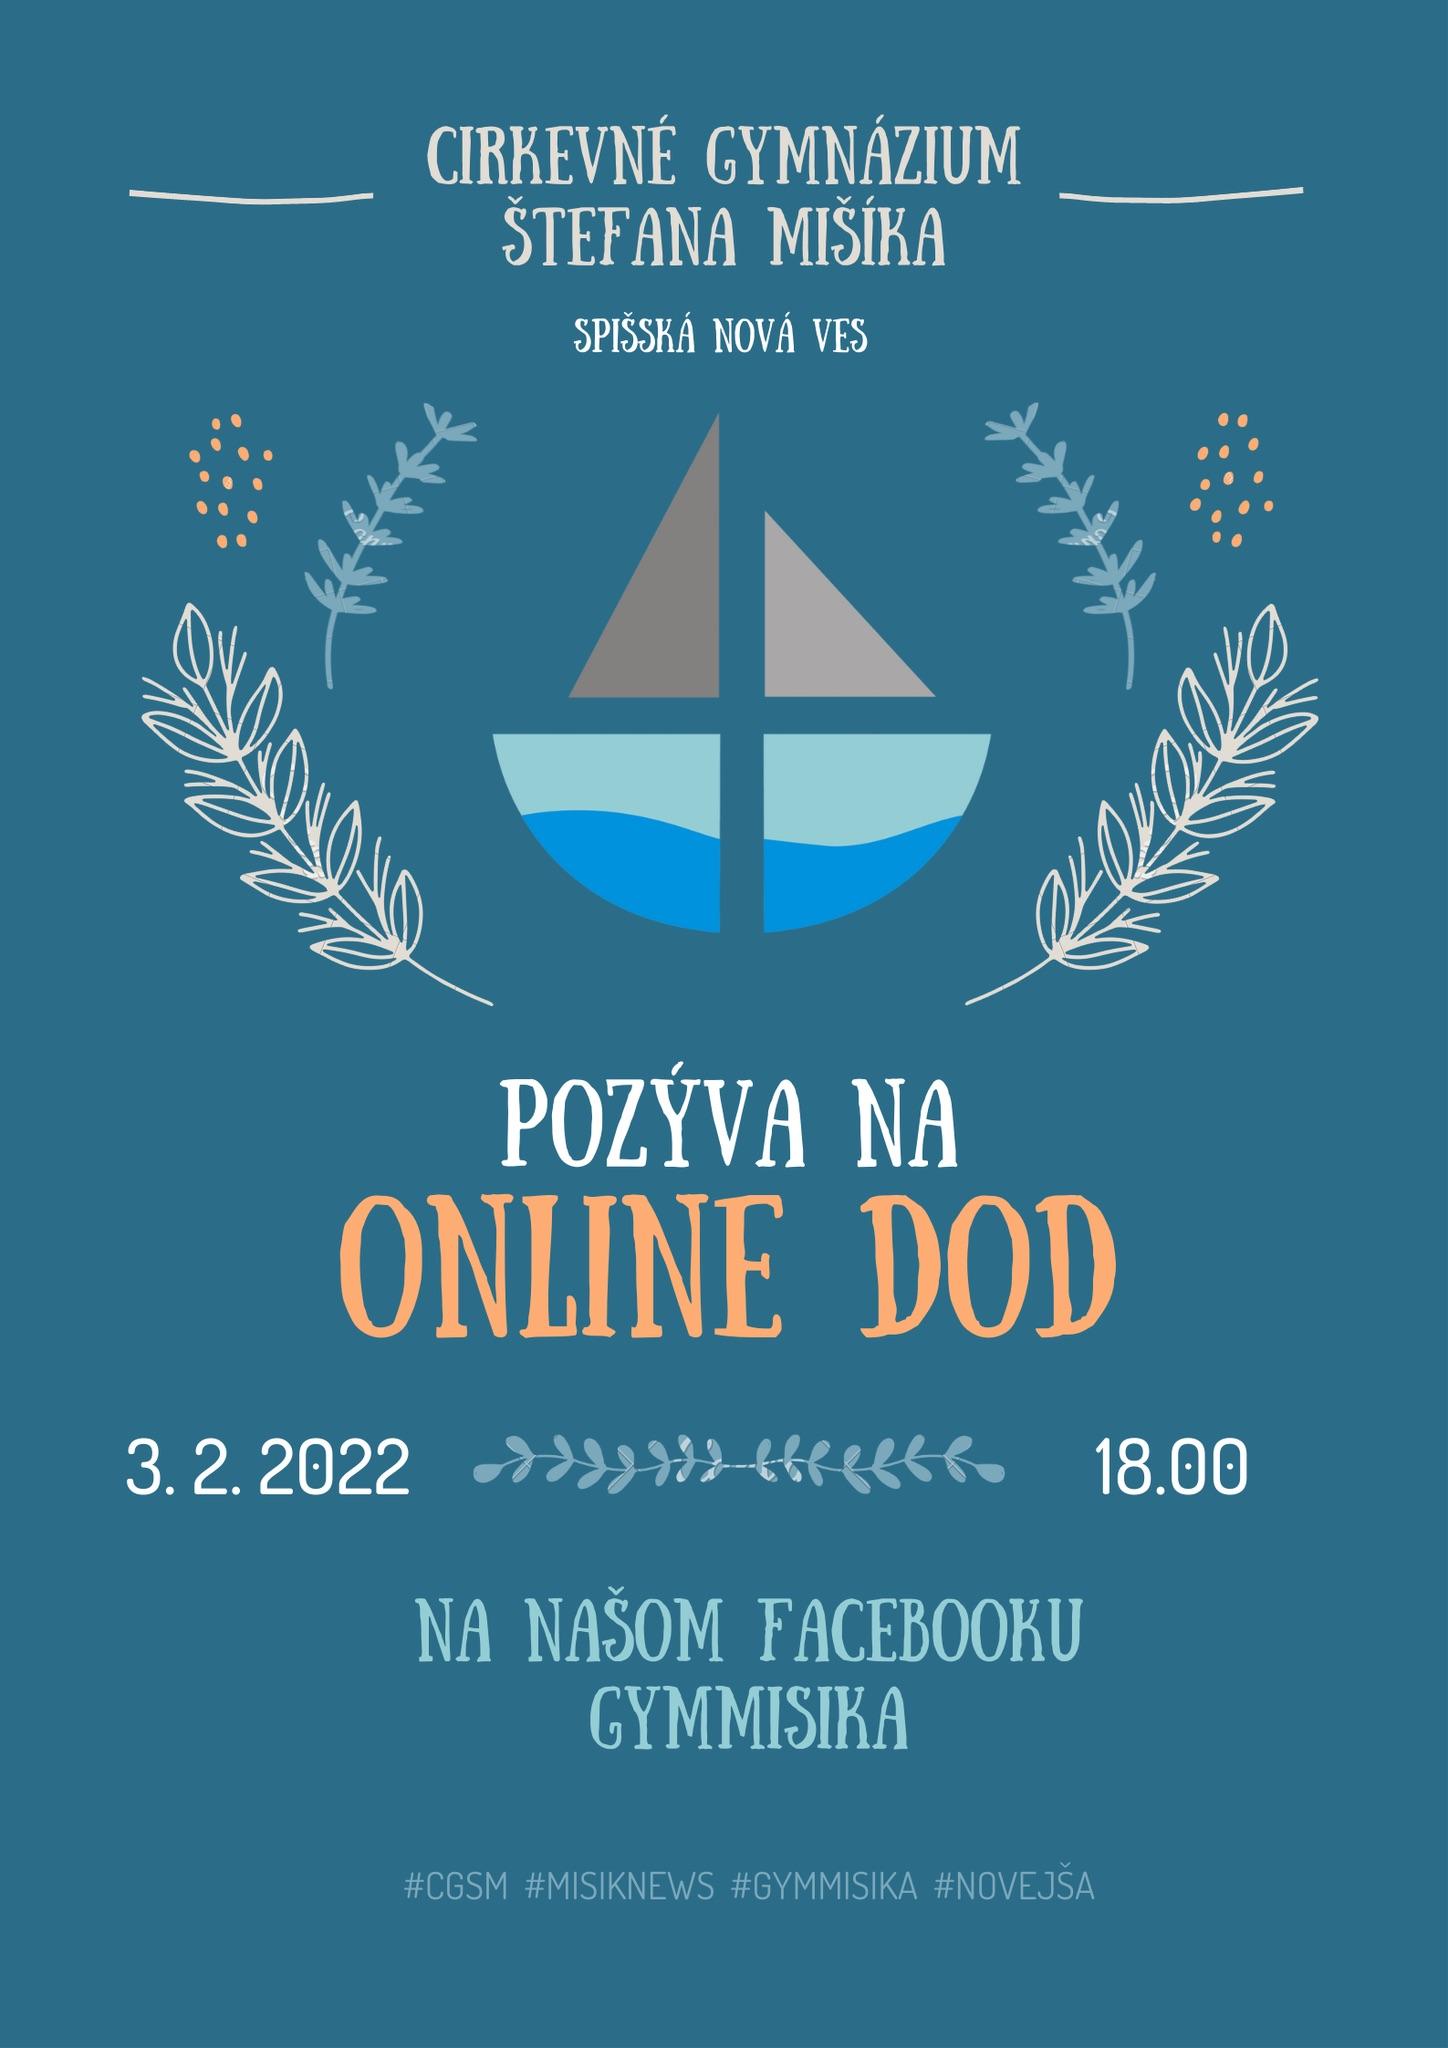 Spisska Nova Ves, online, skolenie, plagat